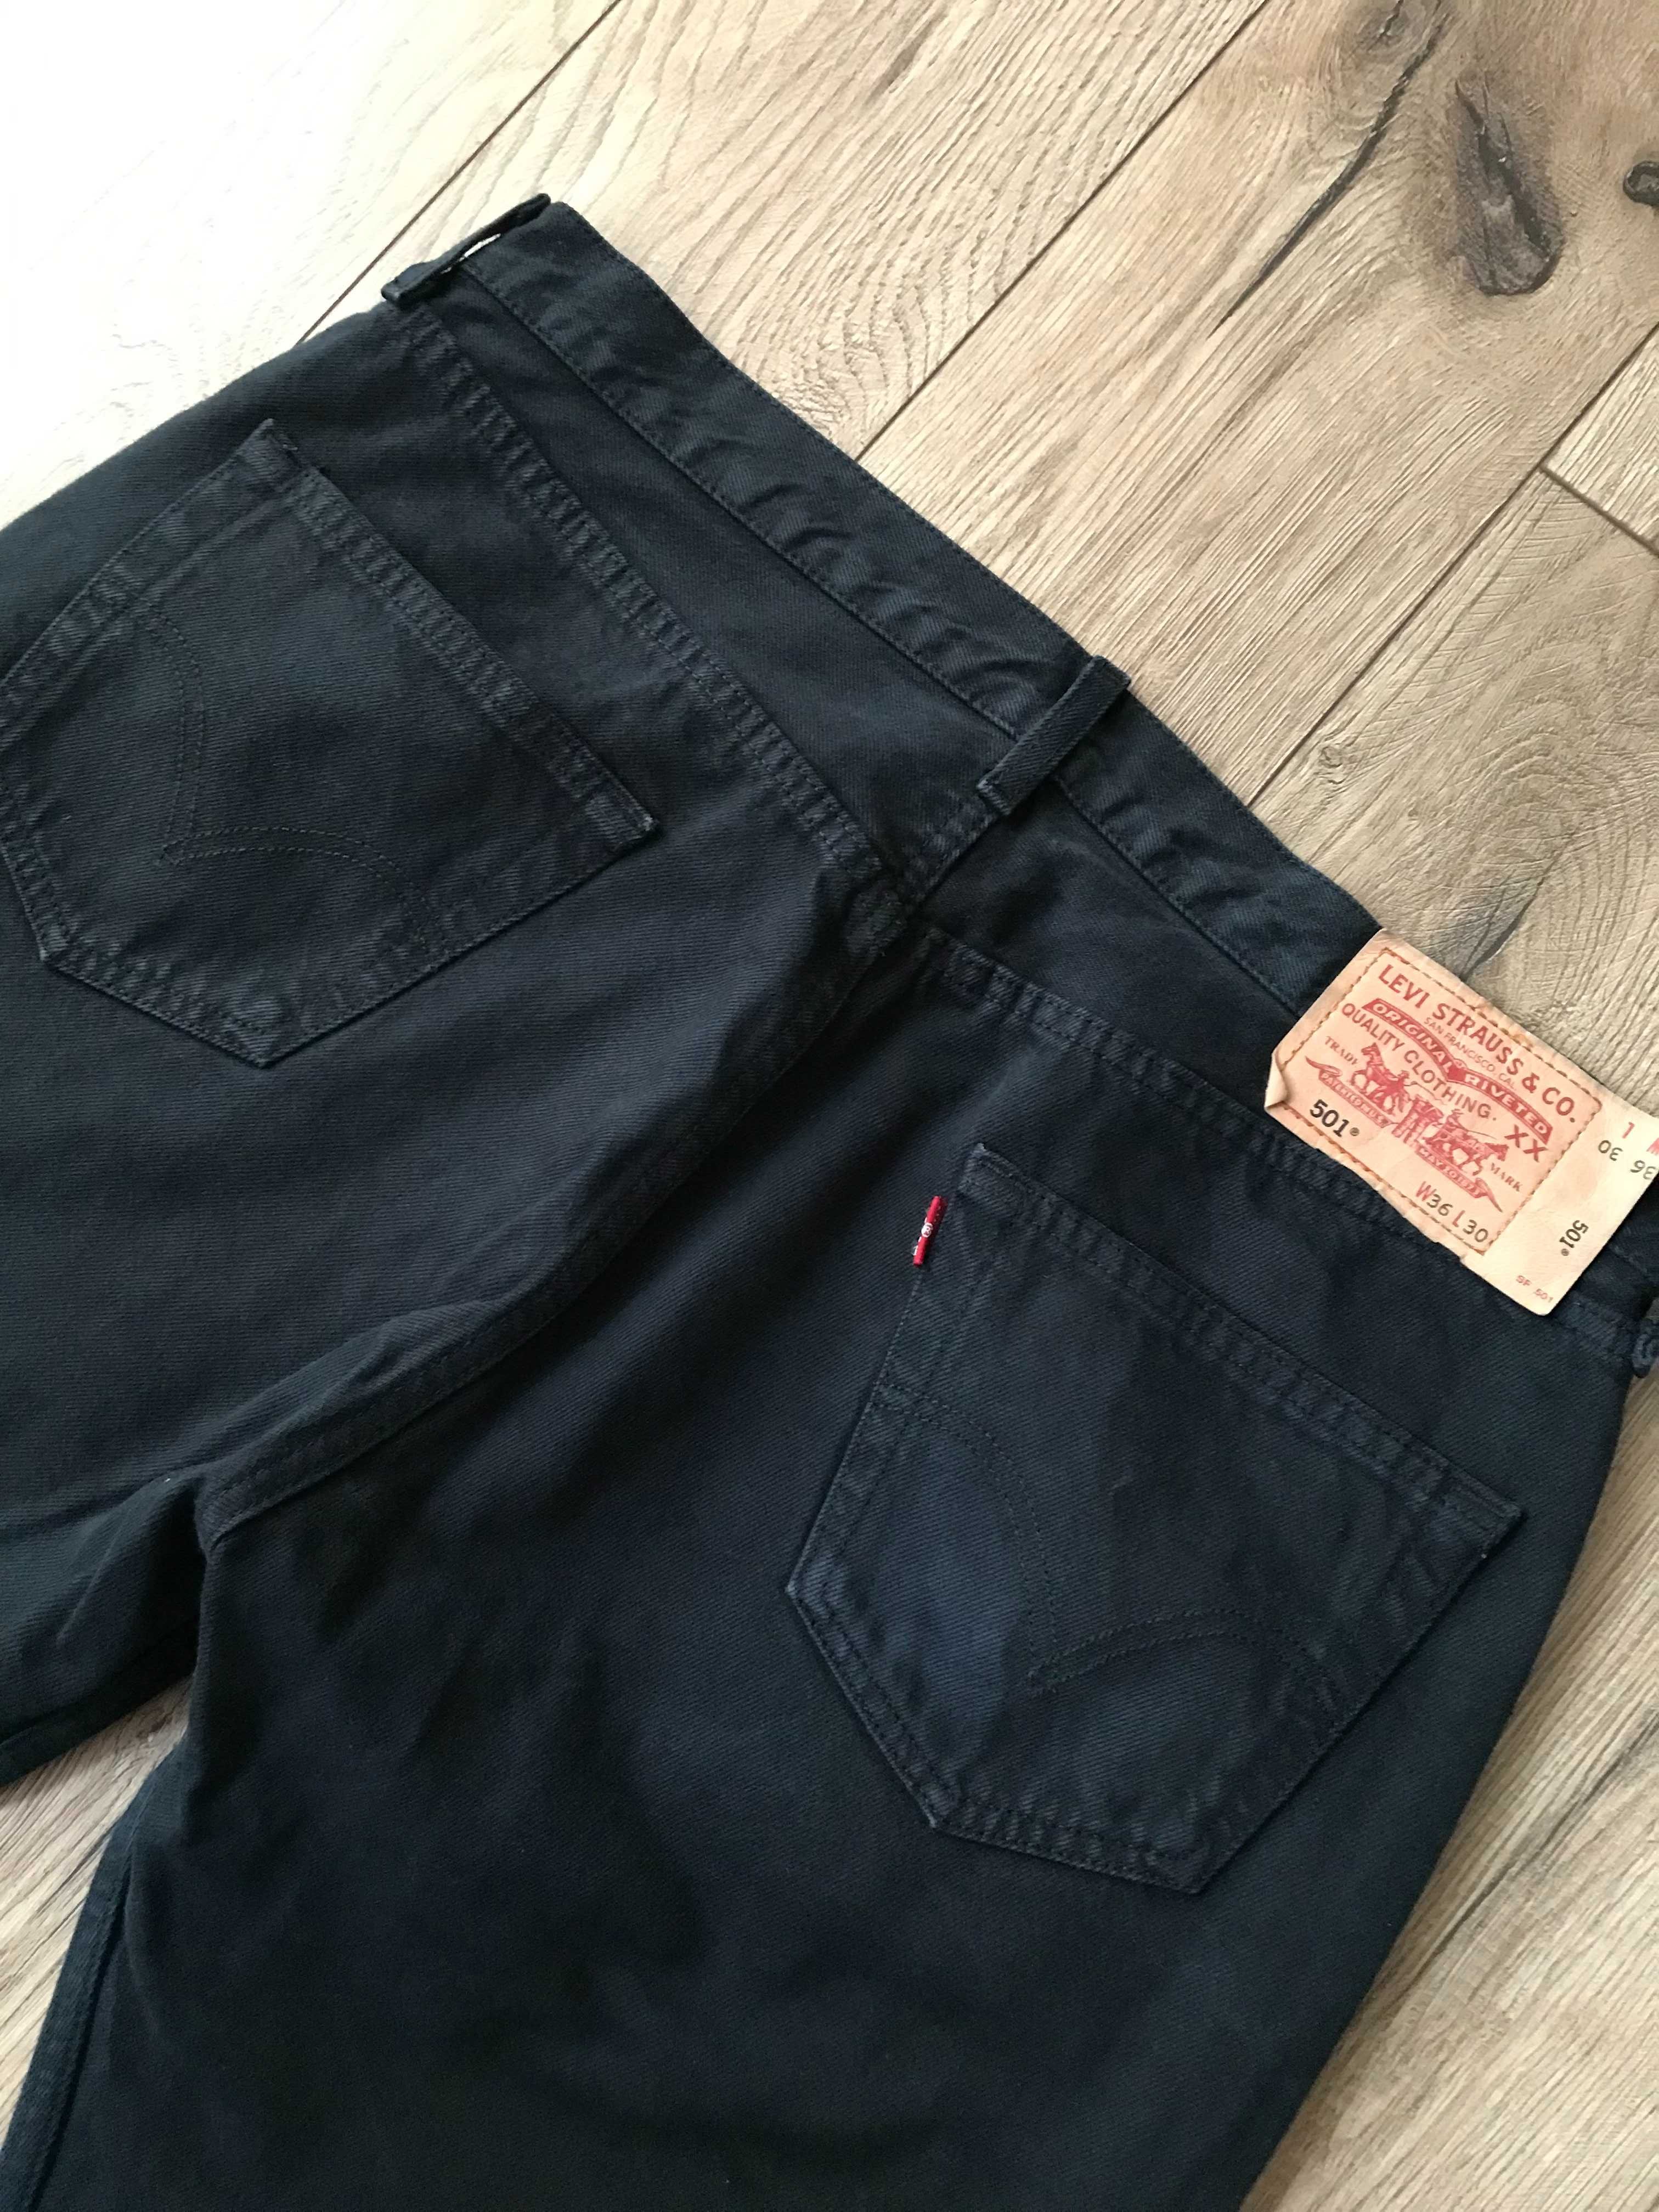 Spodnie jeansowe Levi's 501 rozm. W36 L 30